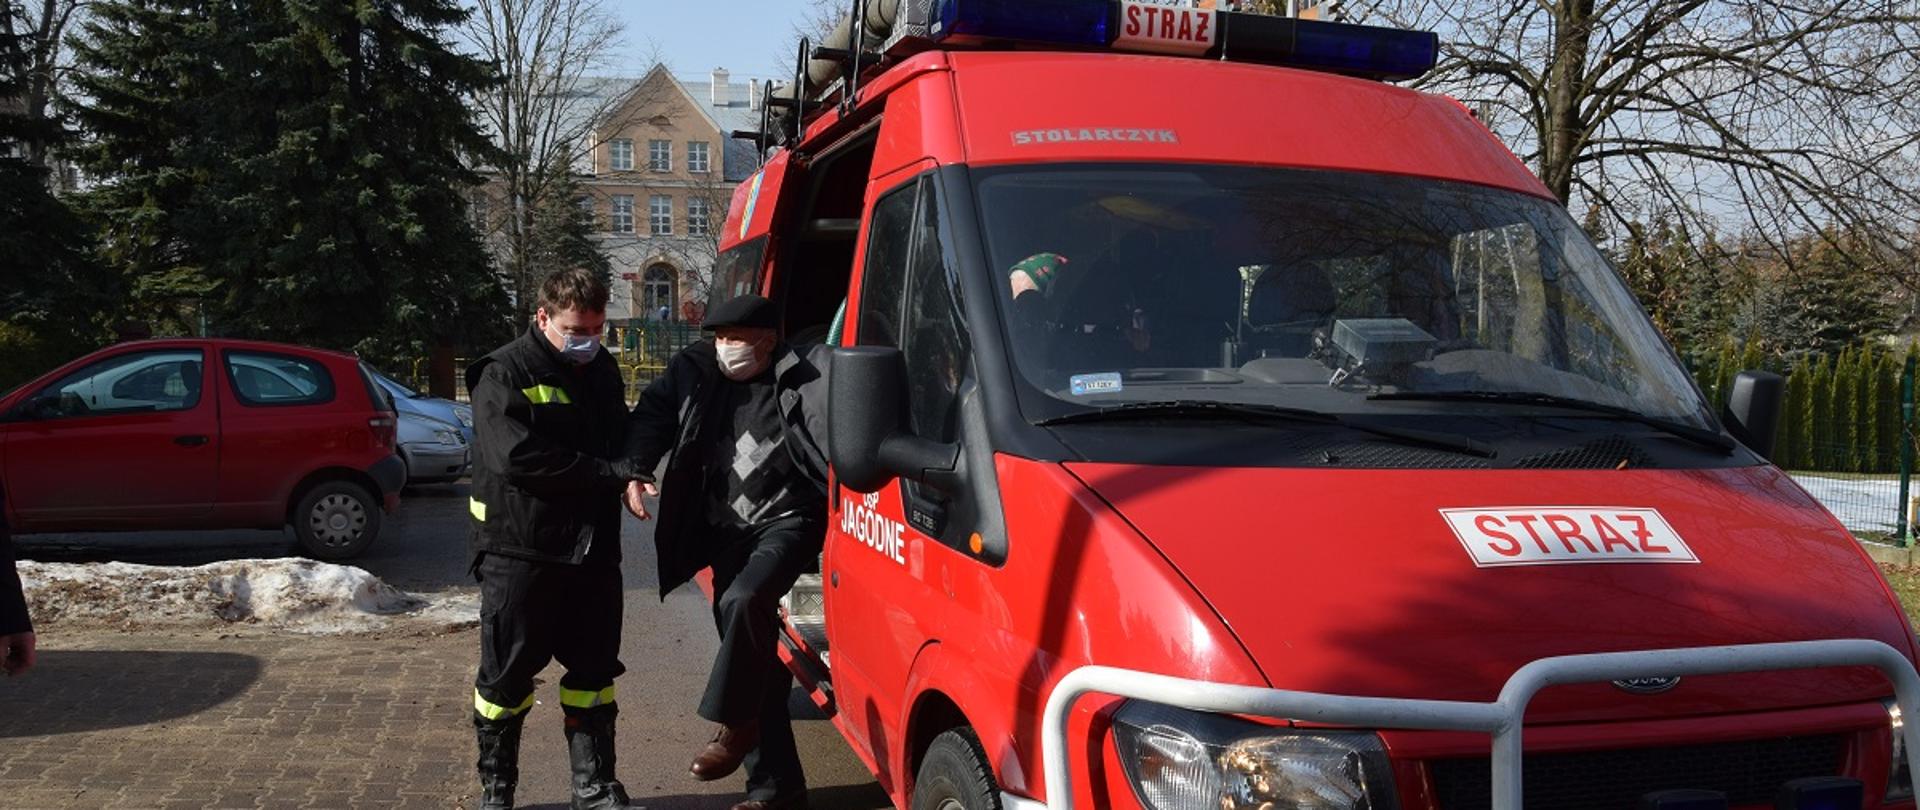 strażak pomaga wysiąść z pojazdu pożarniczego mężczyźnie